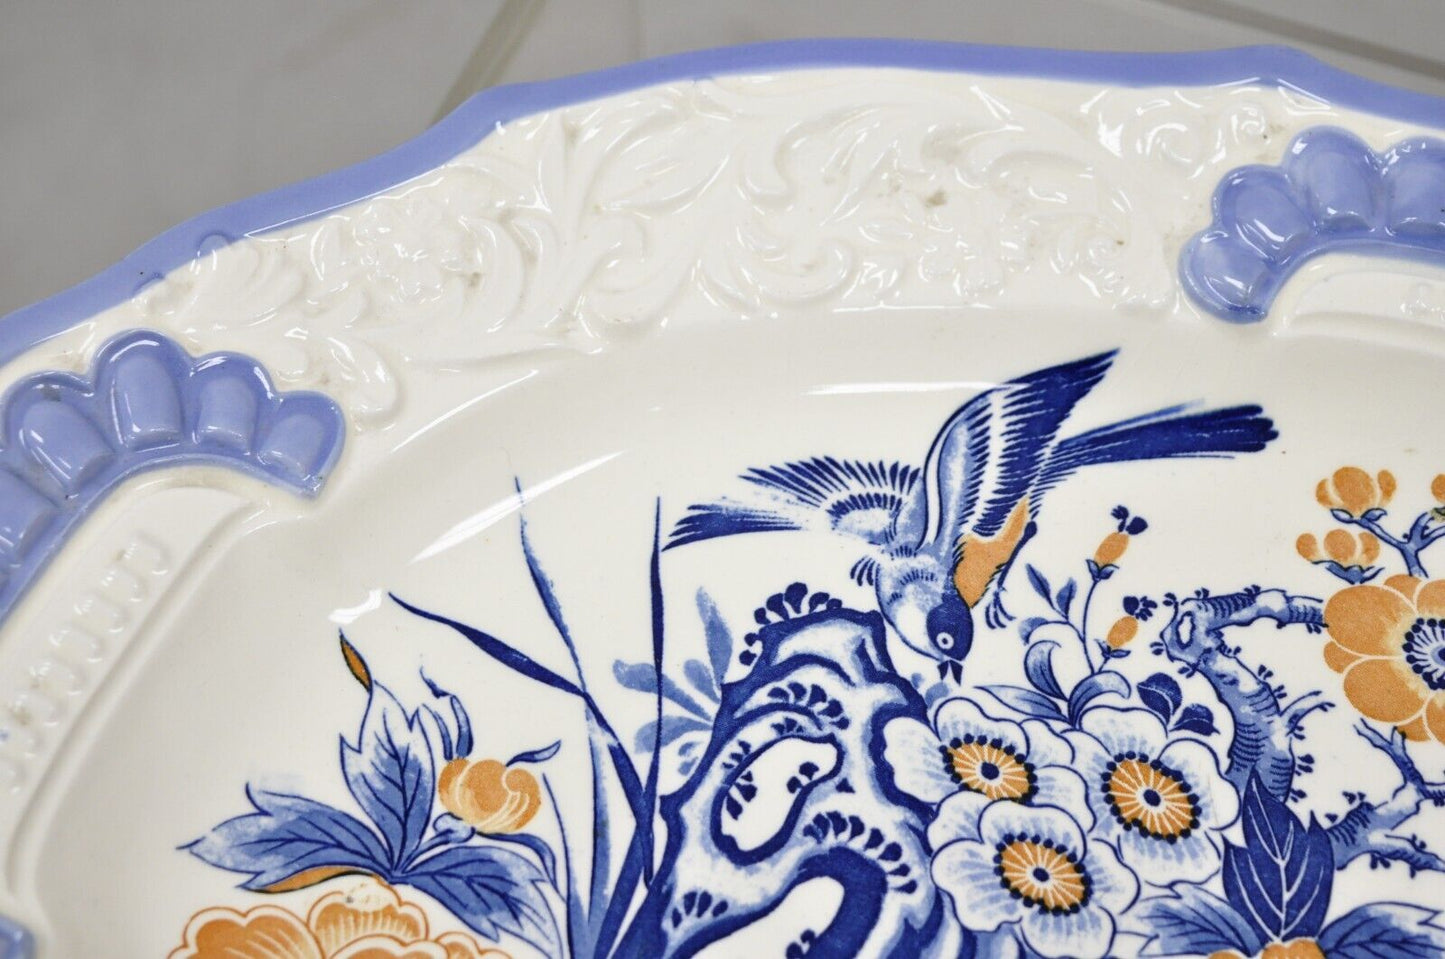 Chikusa Yokkaichi Japan Blue White Ceramic Chinese Bird Platter Dish Plate